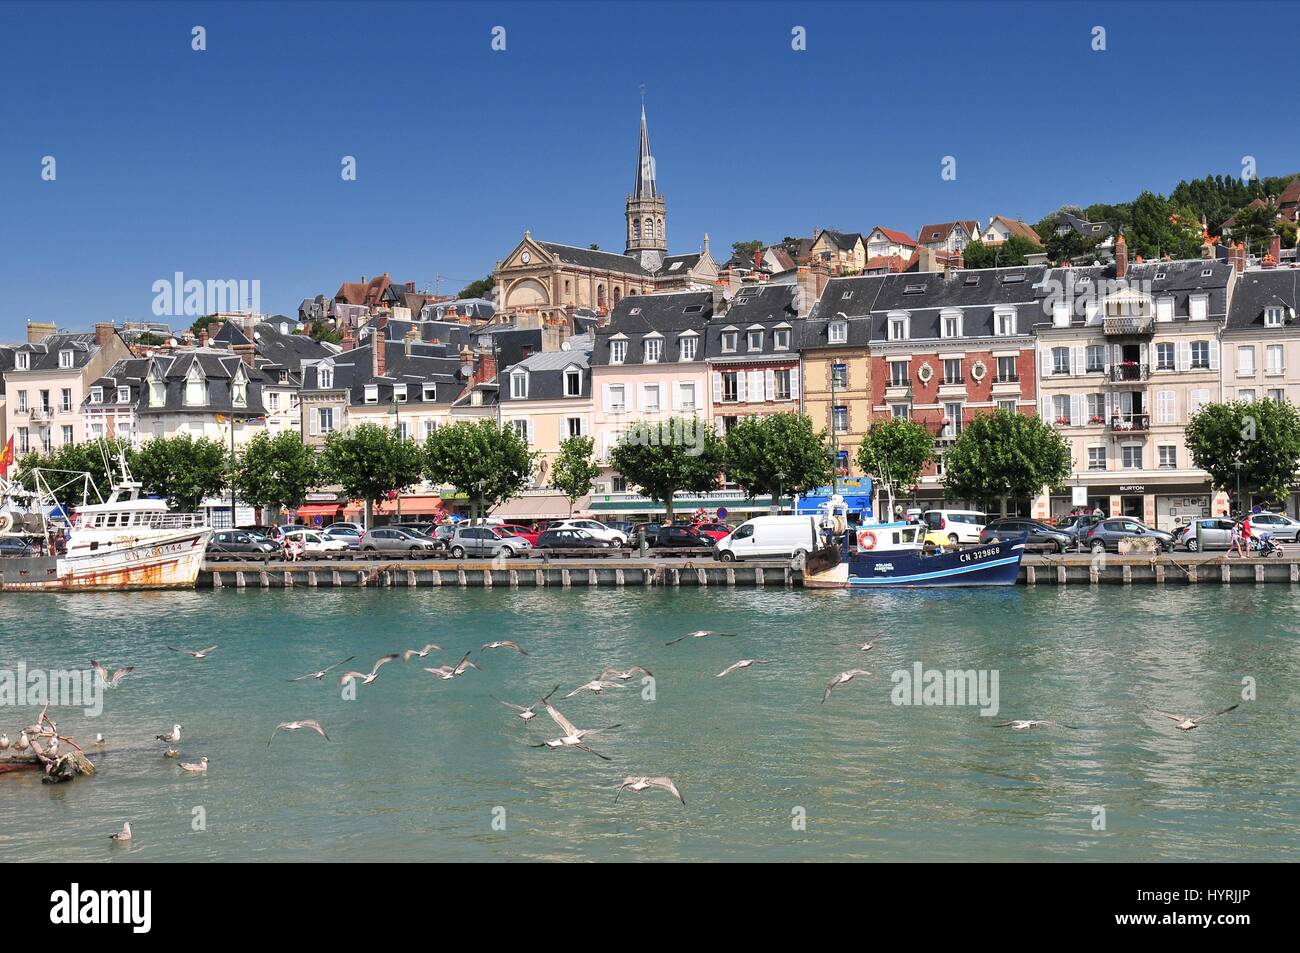 Deauville liegt an der Normandie Küste Frankreichs in der Region Calvados. Berühmt für seine Pferderennbahn Hafen Marinas Casino und Hotels Deauville ist ein beliebtes Stockfoto